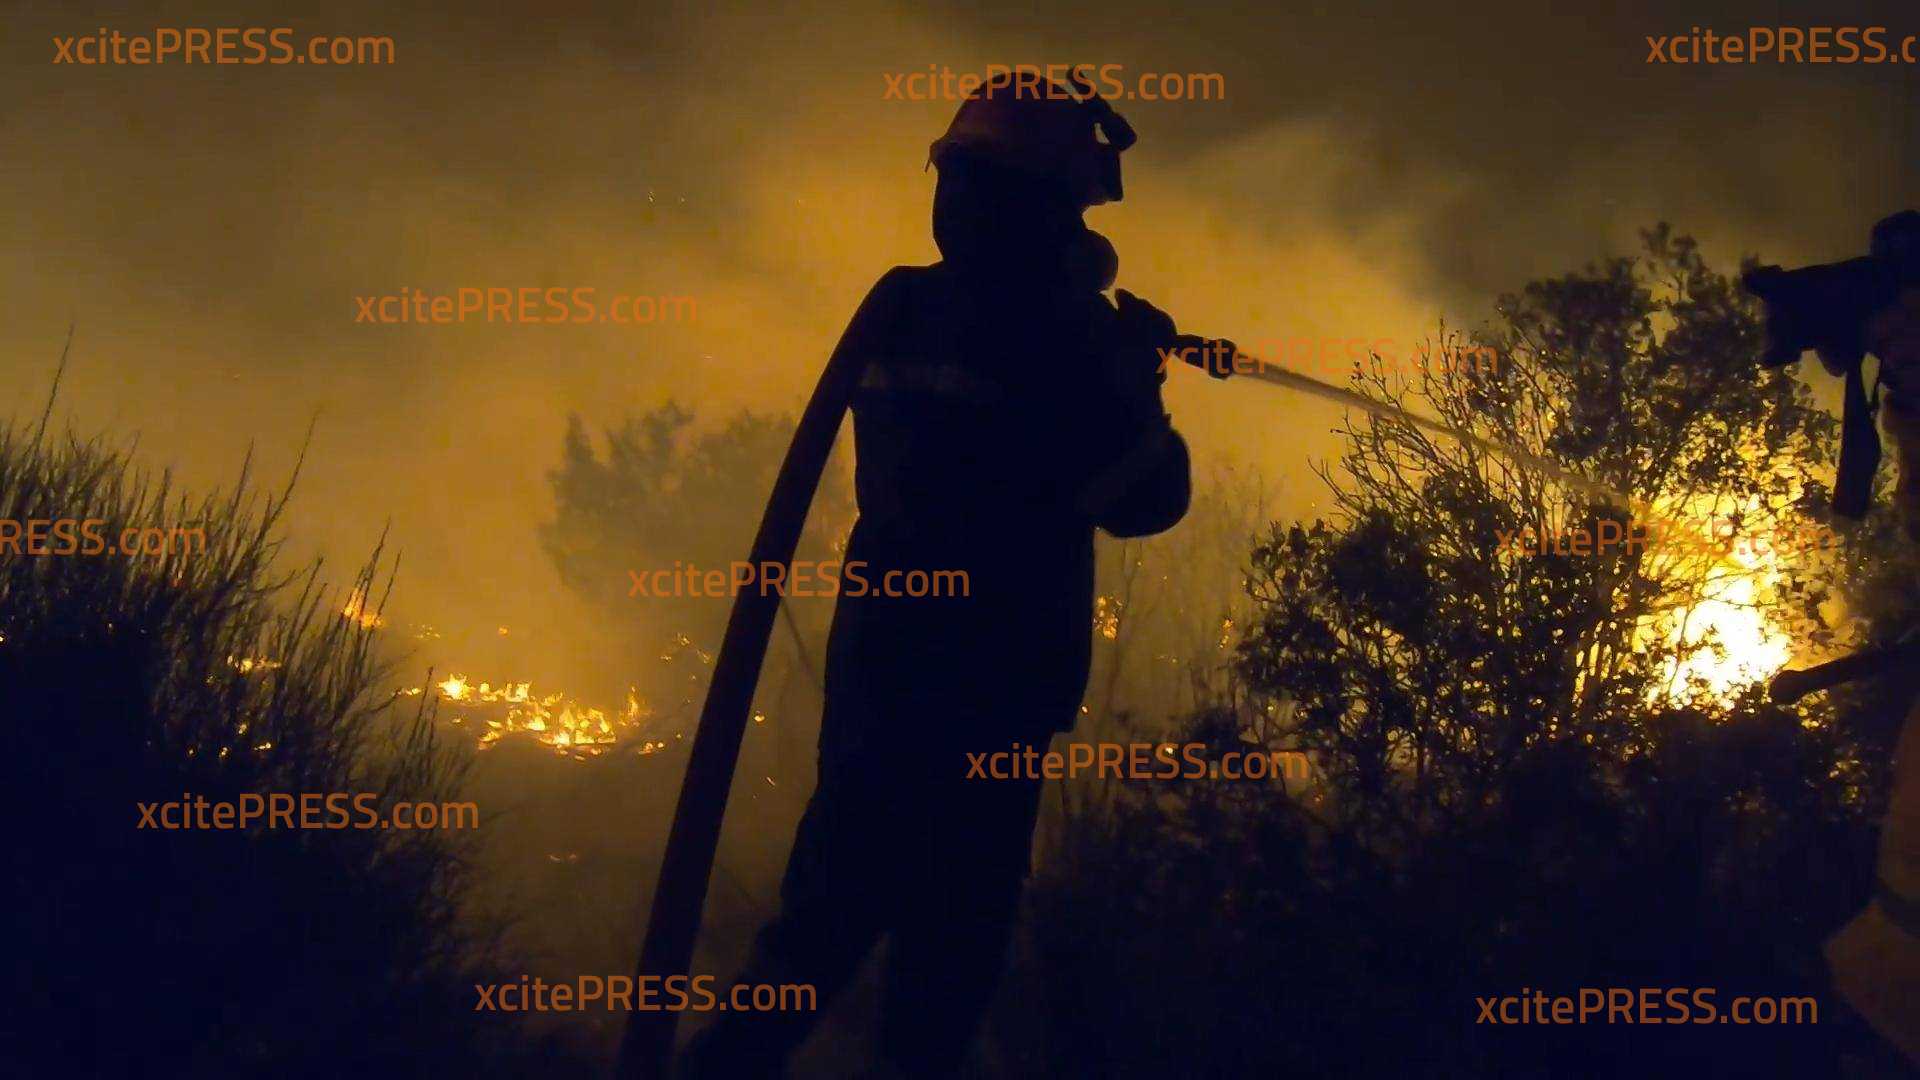 Waldbrände bei Athen über Nacht wieder eskaliert - exklusive GoPro-Aufnahmen vom Kampf der Einsatzkräfte an der vordersten Feuerfront: Hubschrauber konnten die Lage am Tag endlich eindämmen - doch jetzt droht die Situation erneut außer Kontrolle zu geraten!